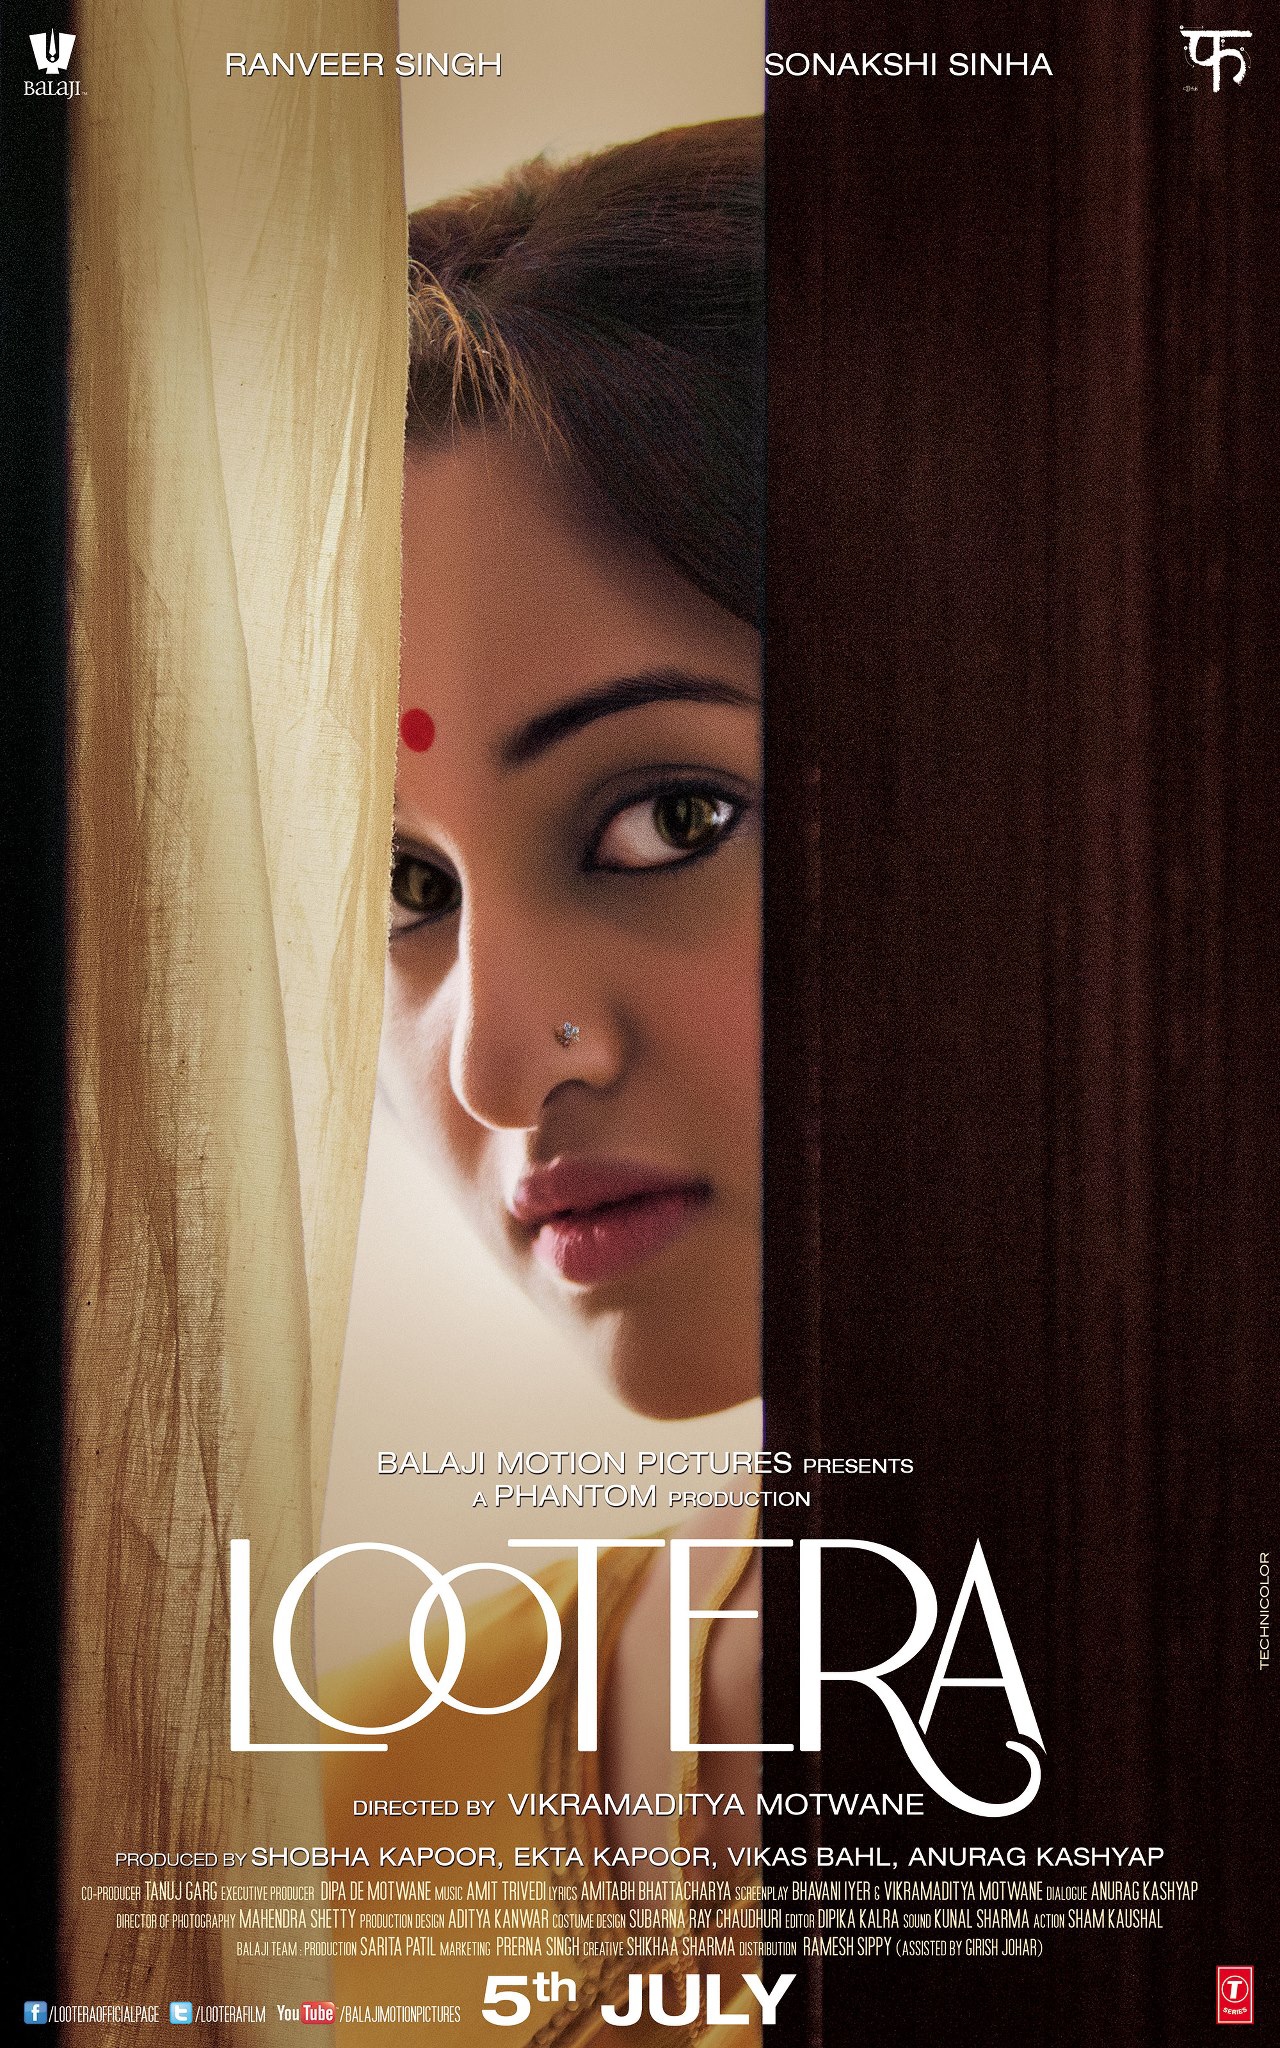 Lootera - Movie Poster #2 (Original)